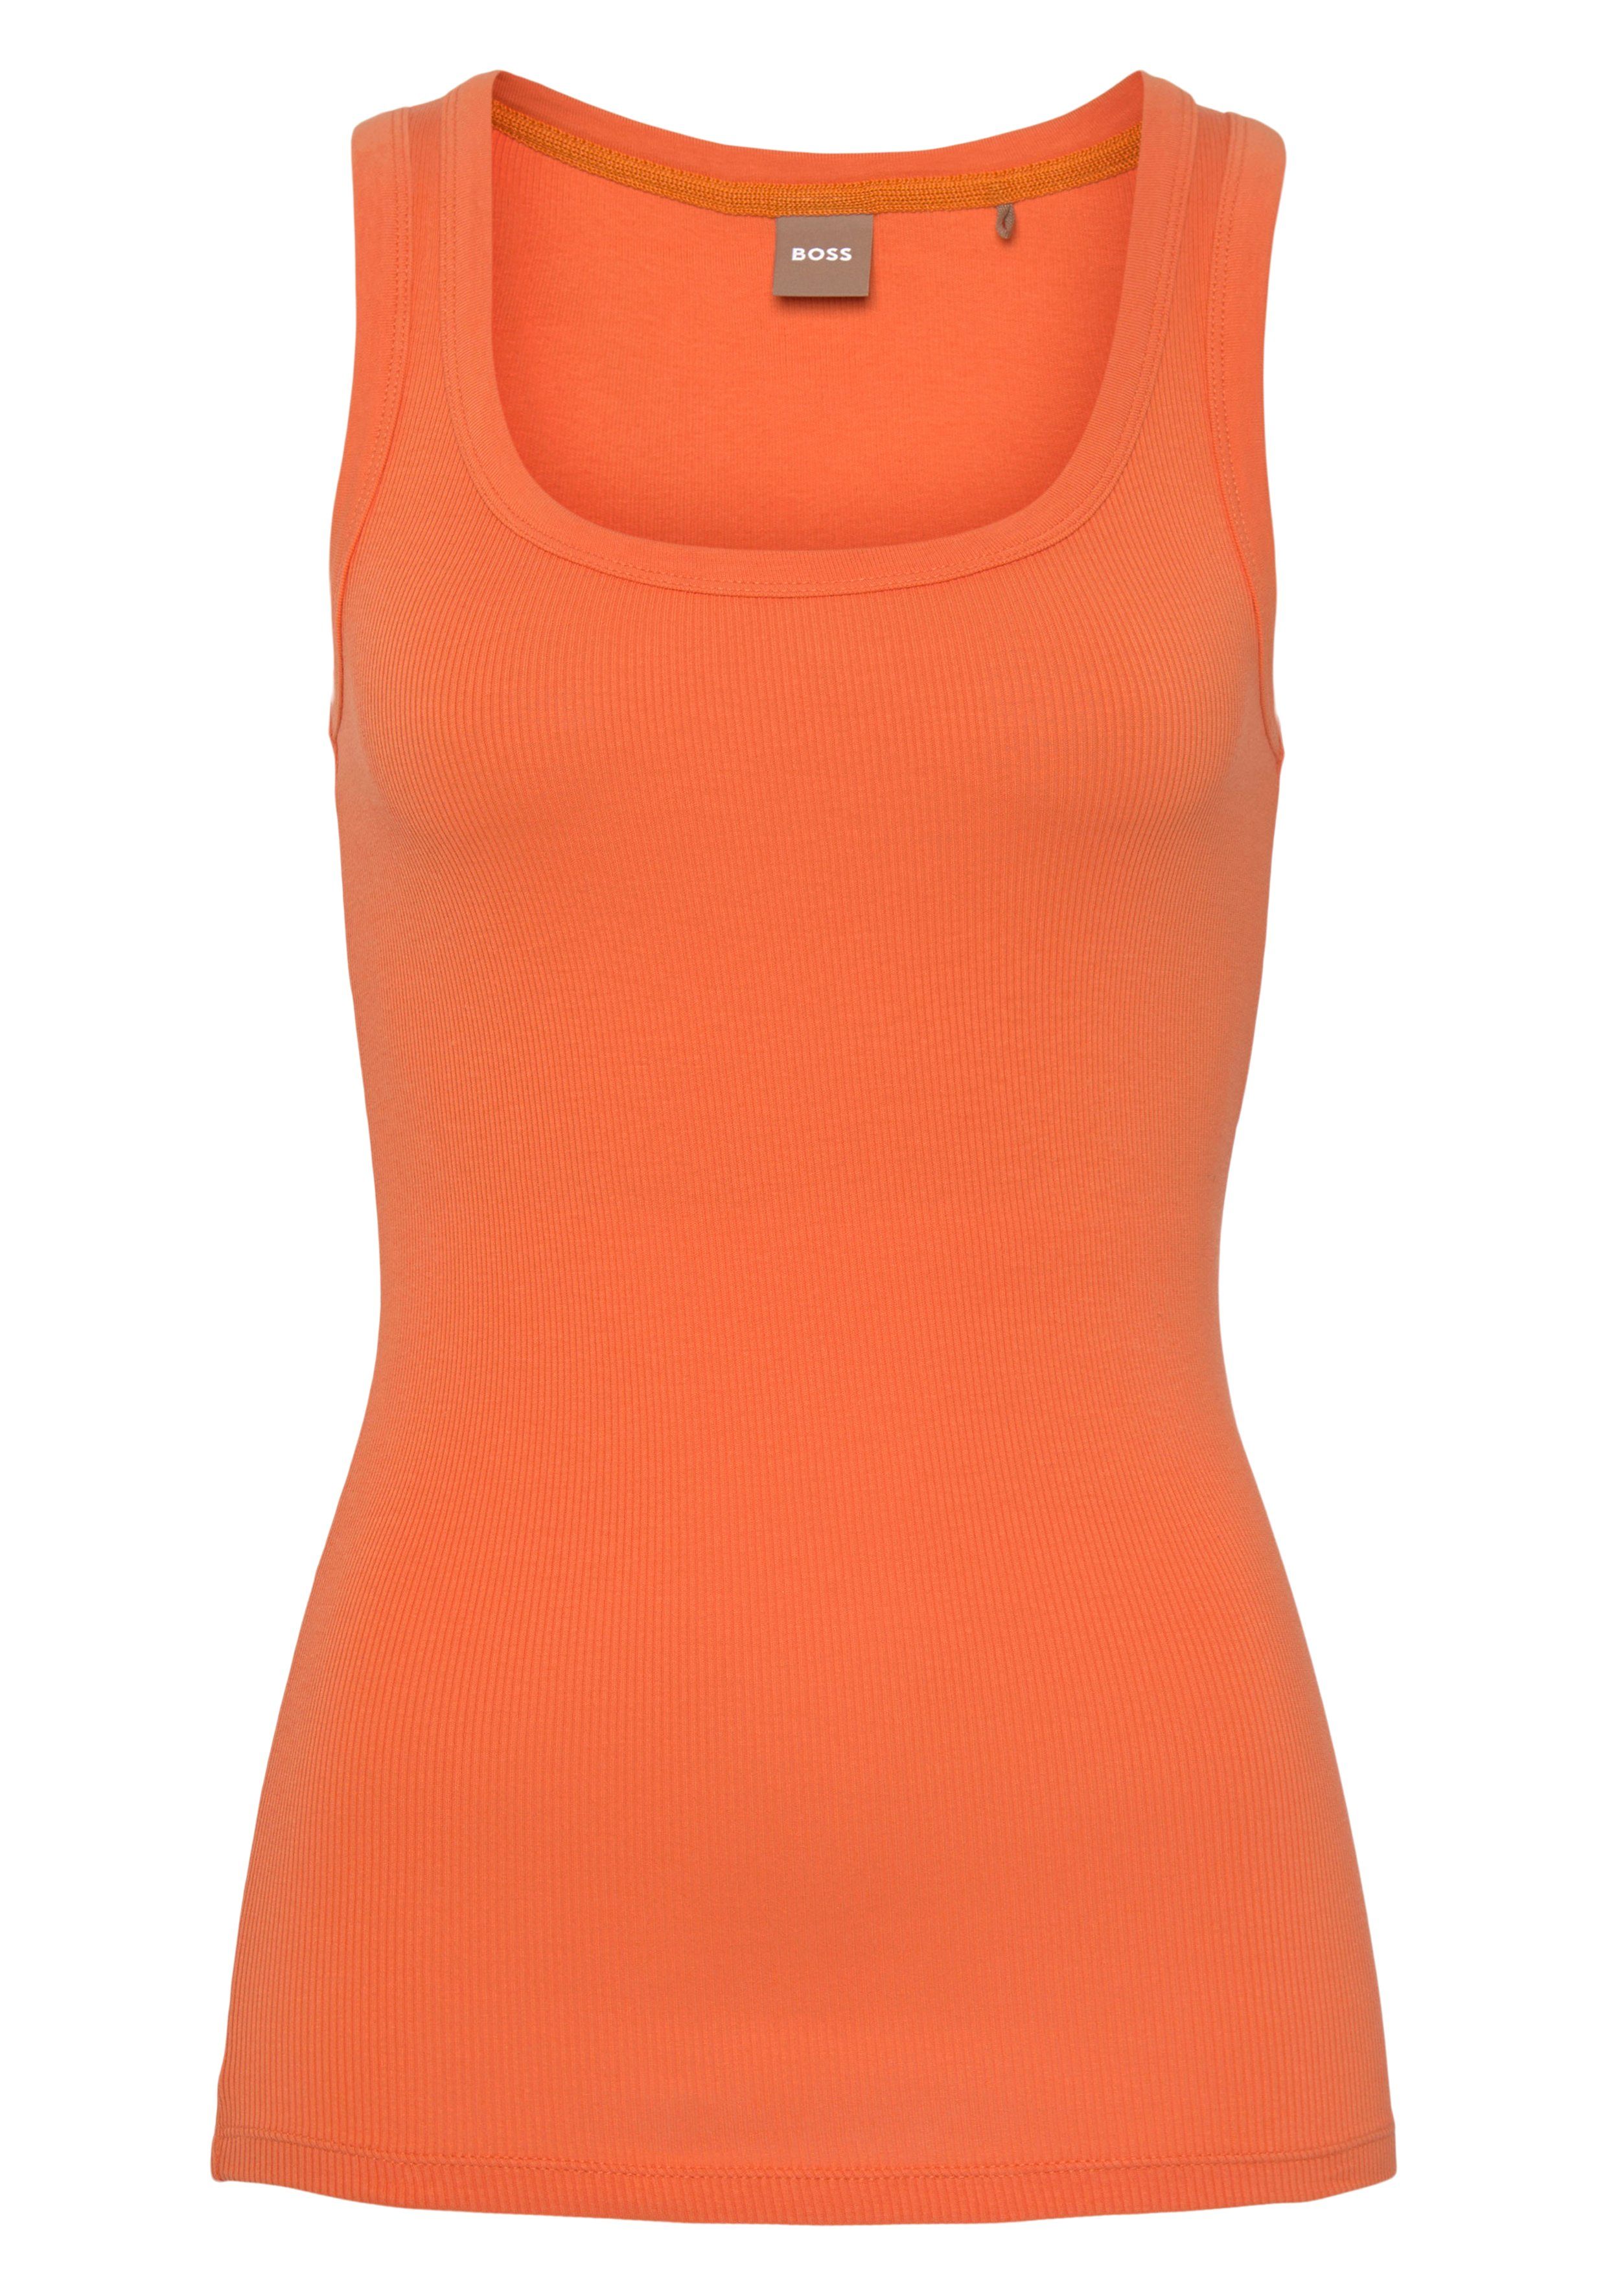 BOSS Markenstreifen ORANGE BOSS innen mit Muskelshirt Bright_Orange